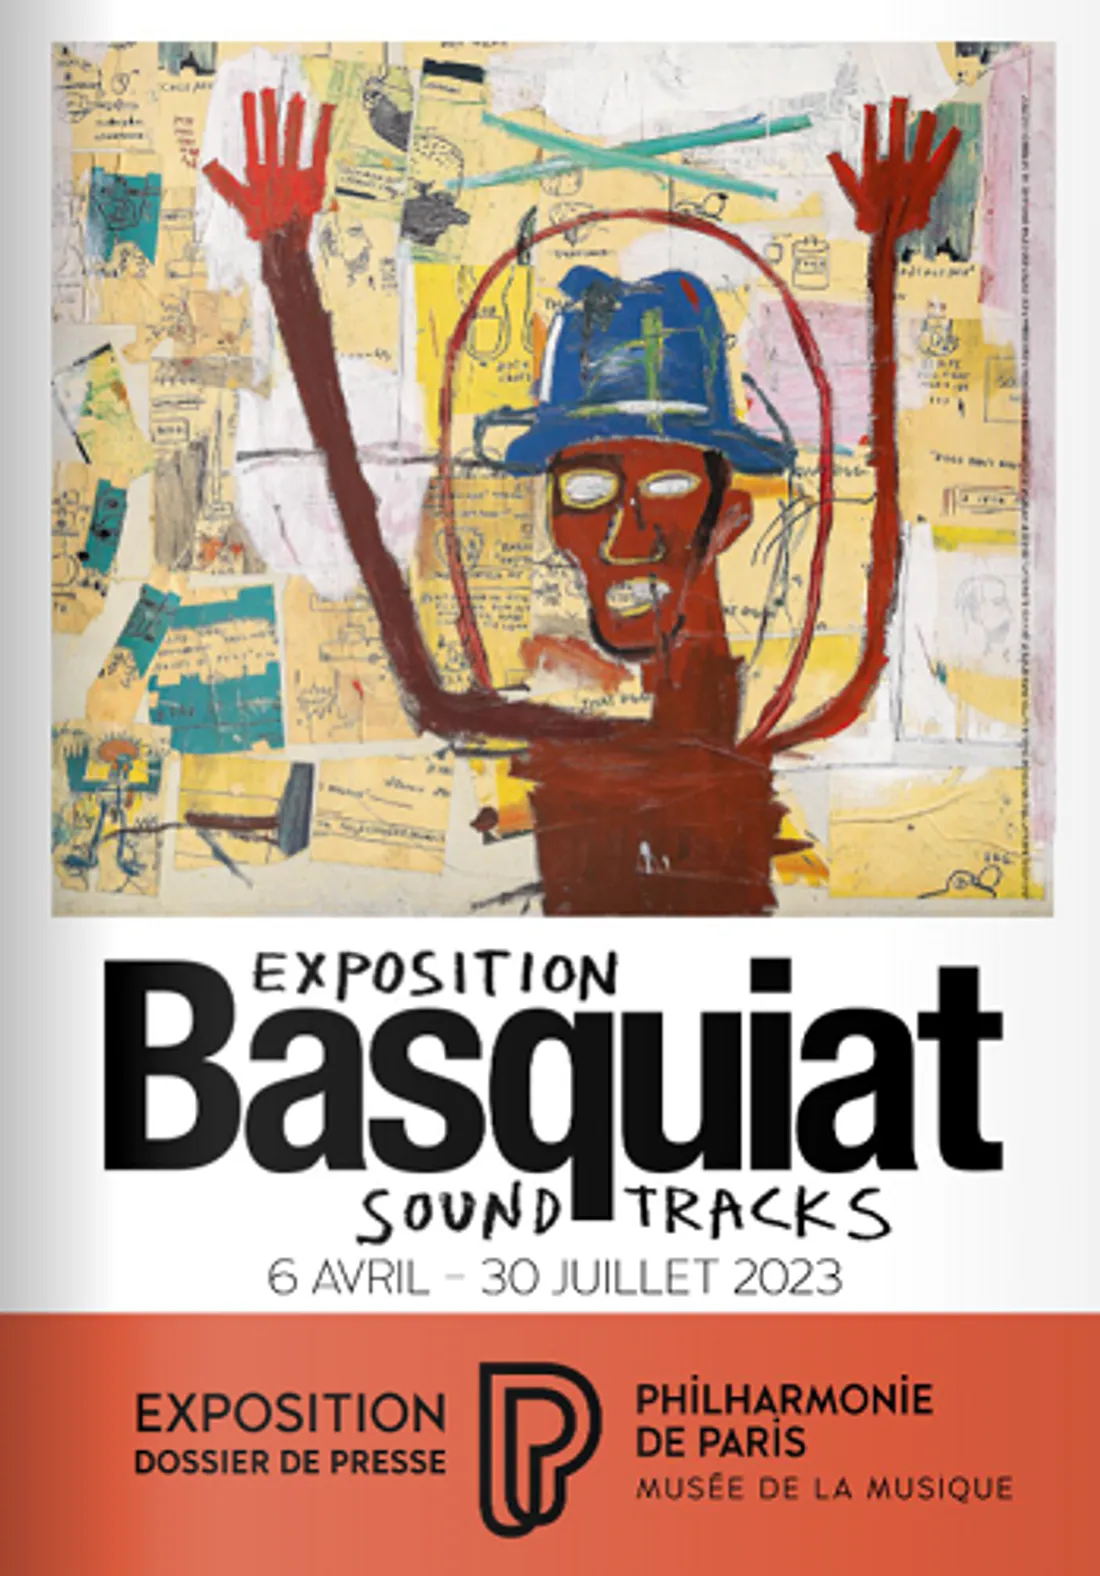 La musique au cœur de l'exposition artistique "Basquiat Soundtracks"